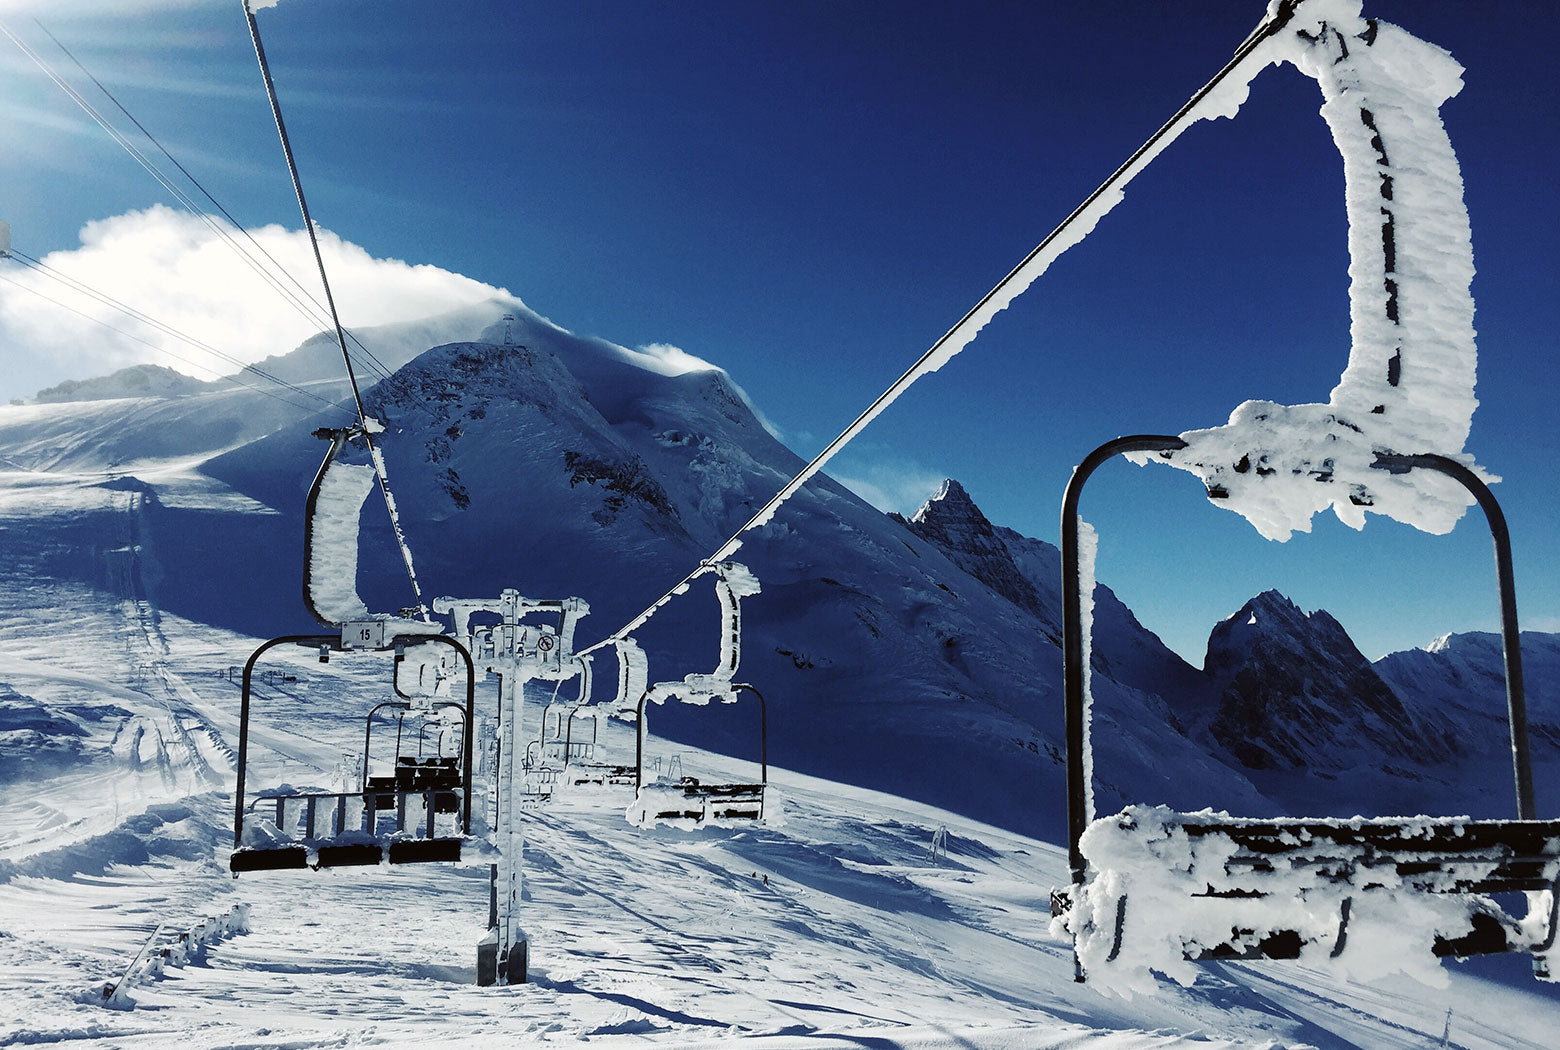 Les 10 meilleurs soins après ski de Pure Altitude 